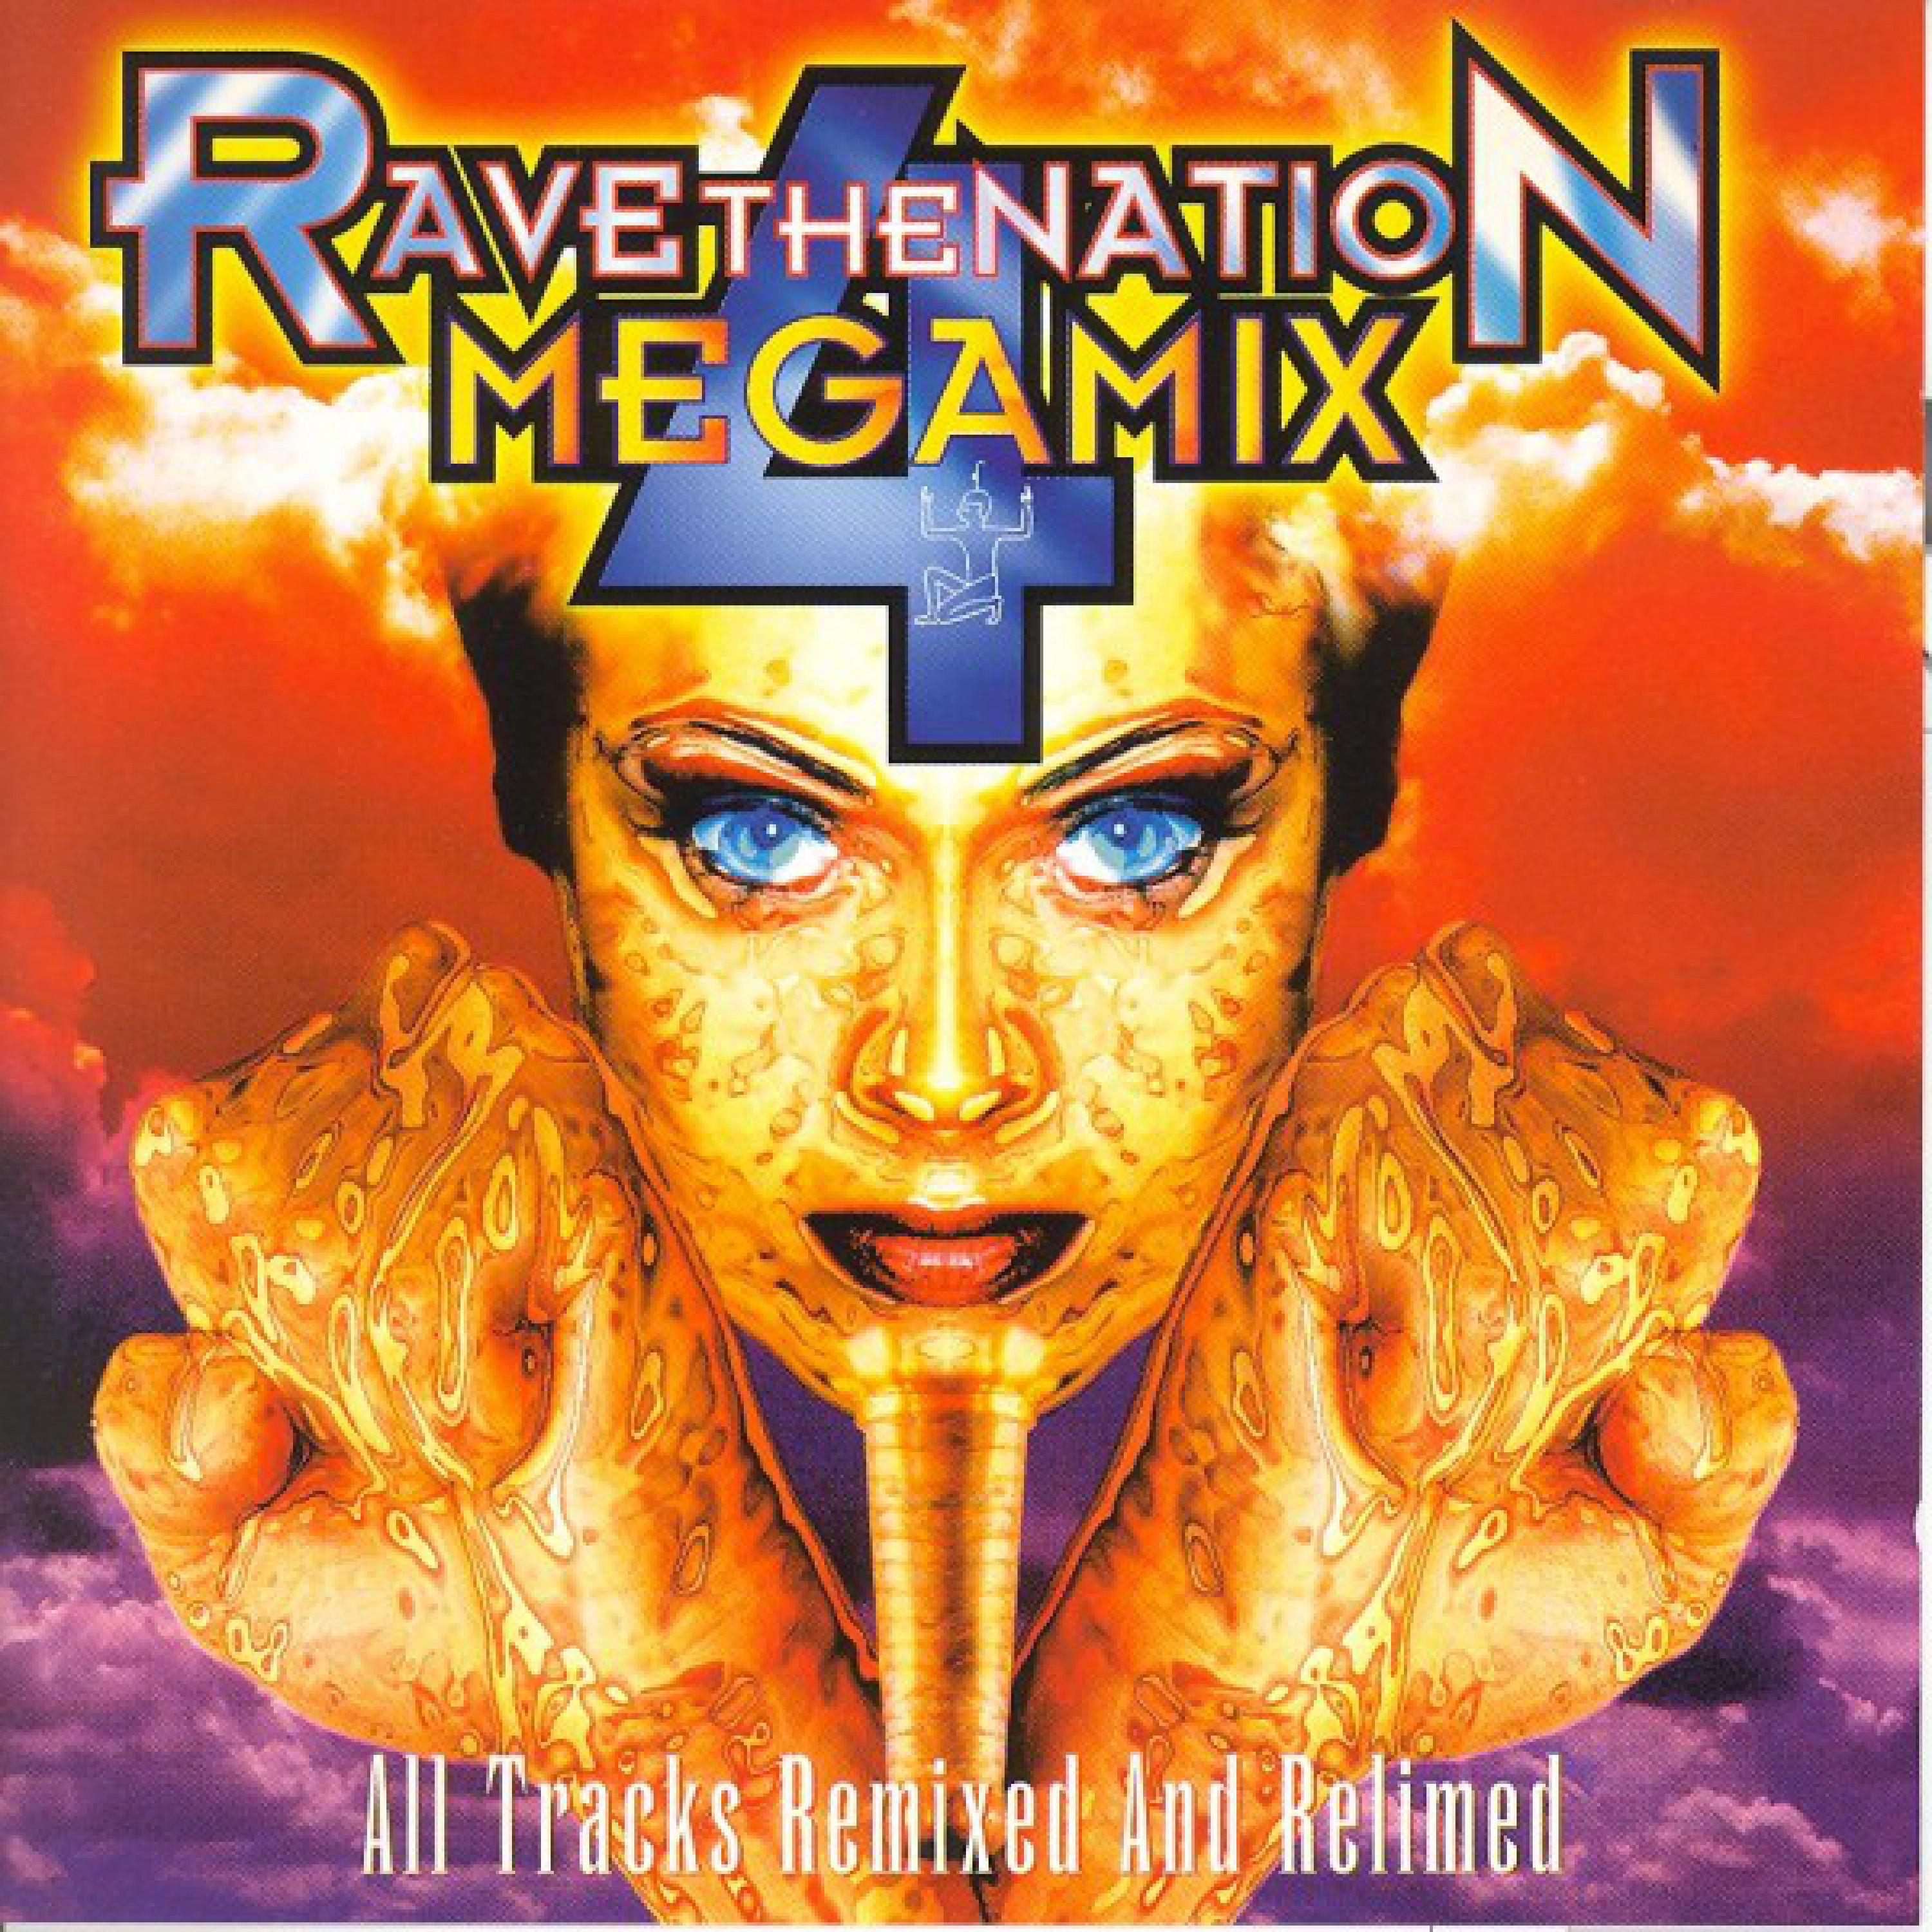 Raving Together (Rave The Nation Megamix, vol. 4)